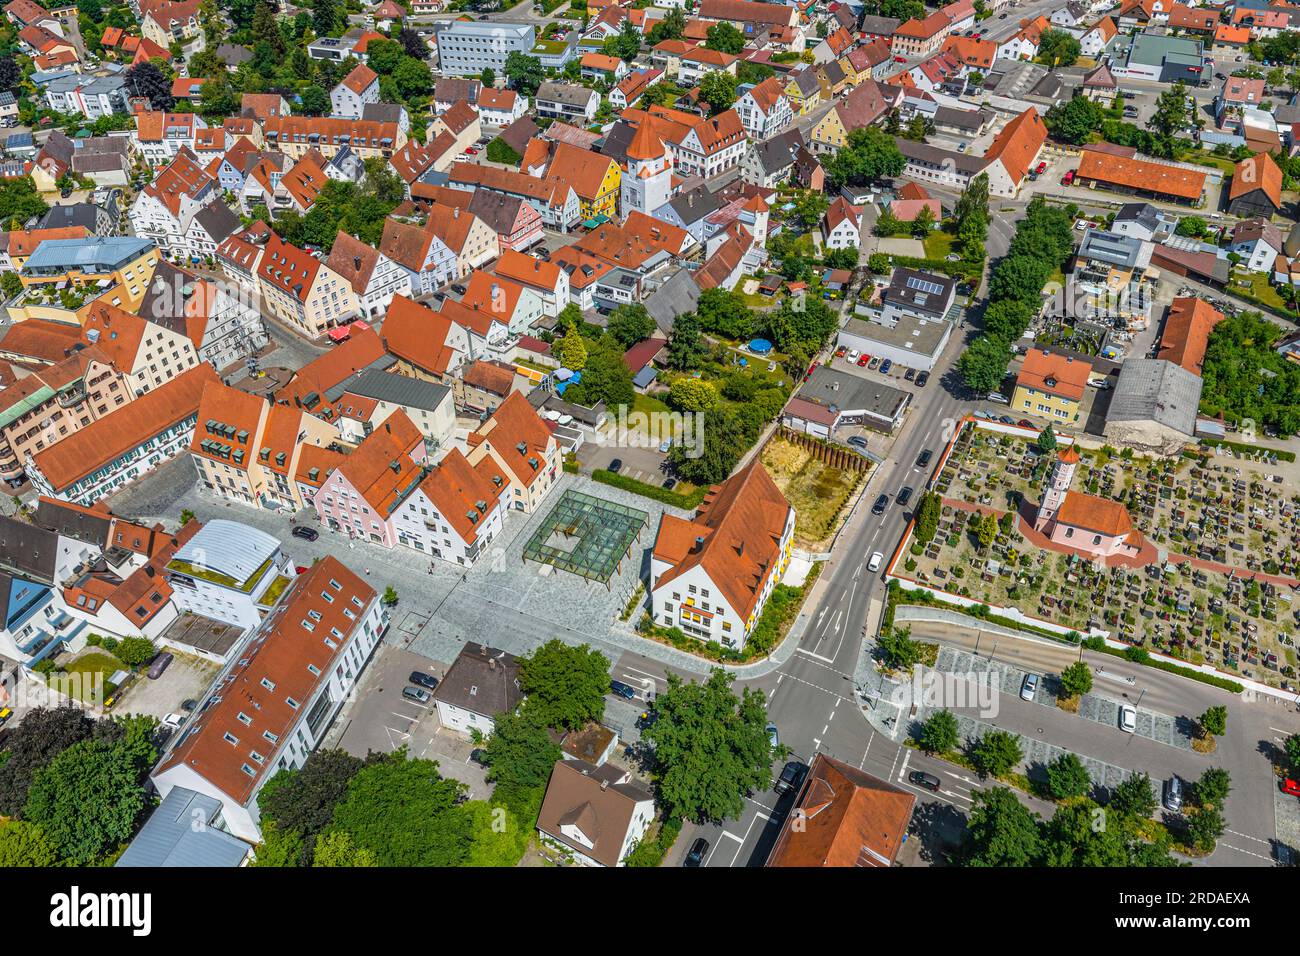 La bella cittadina di Aichach, sul fiume Paar in Baviera, dall'alto Foto Stock